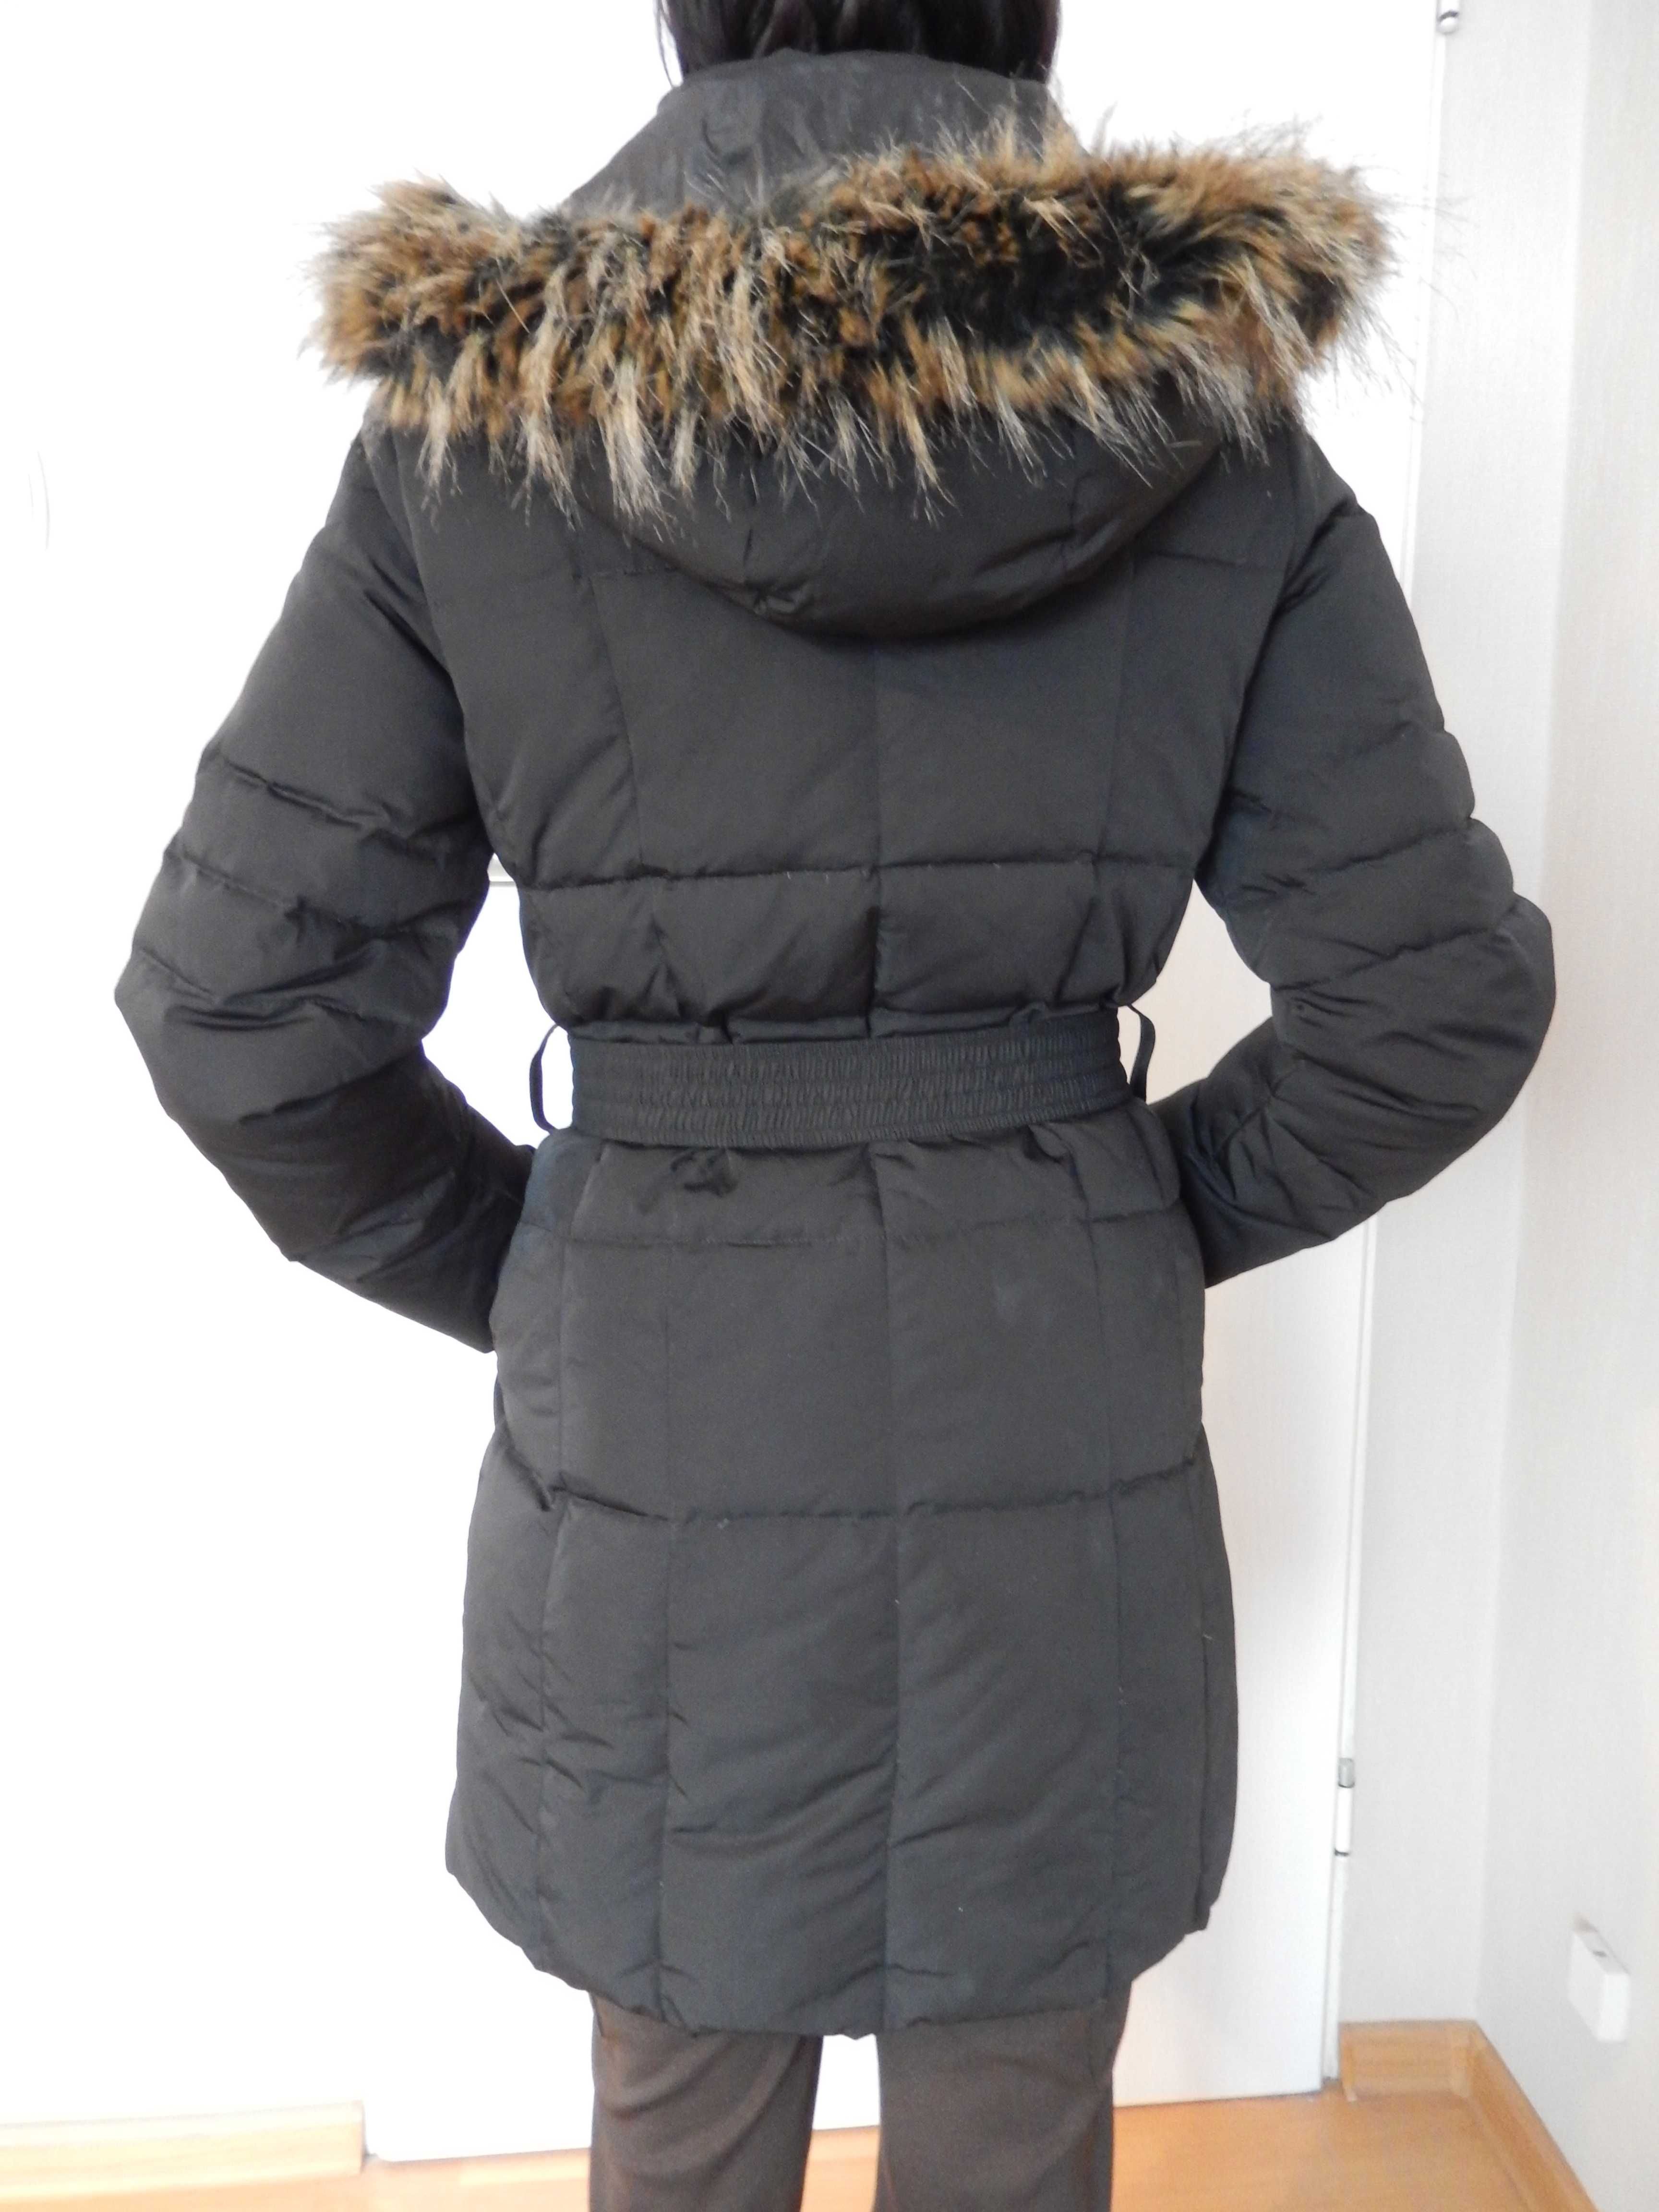 używany damski płaszcz puchowy Laixi Fashion rozmiar S (36)